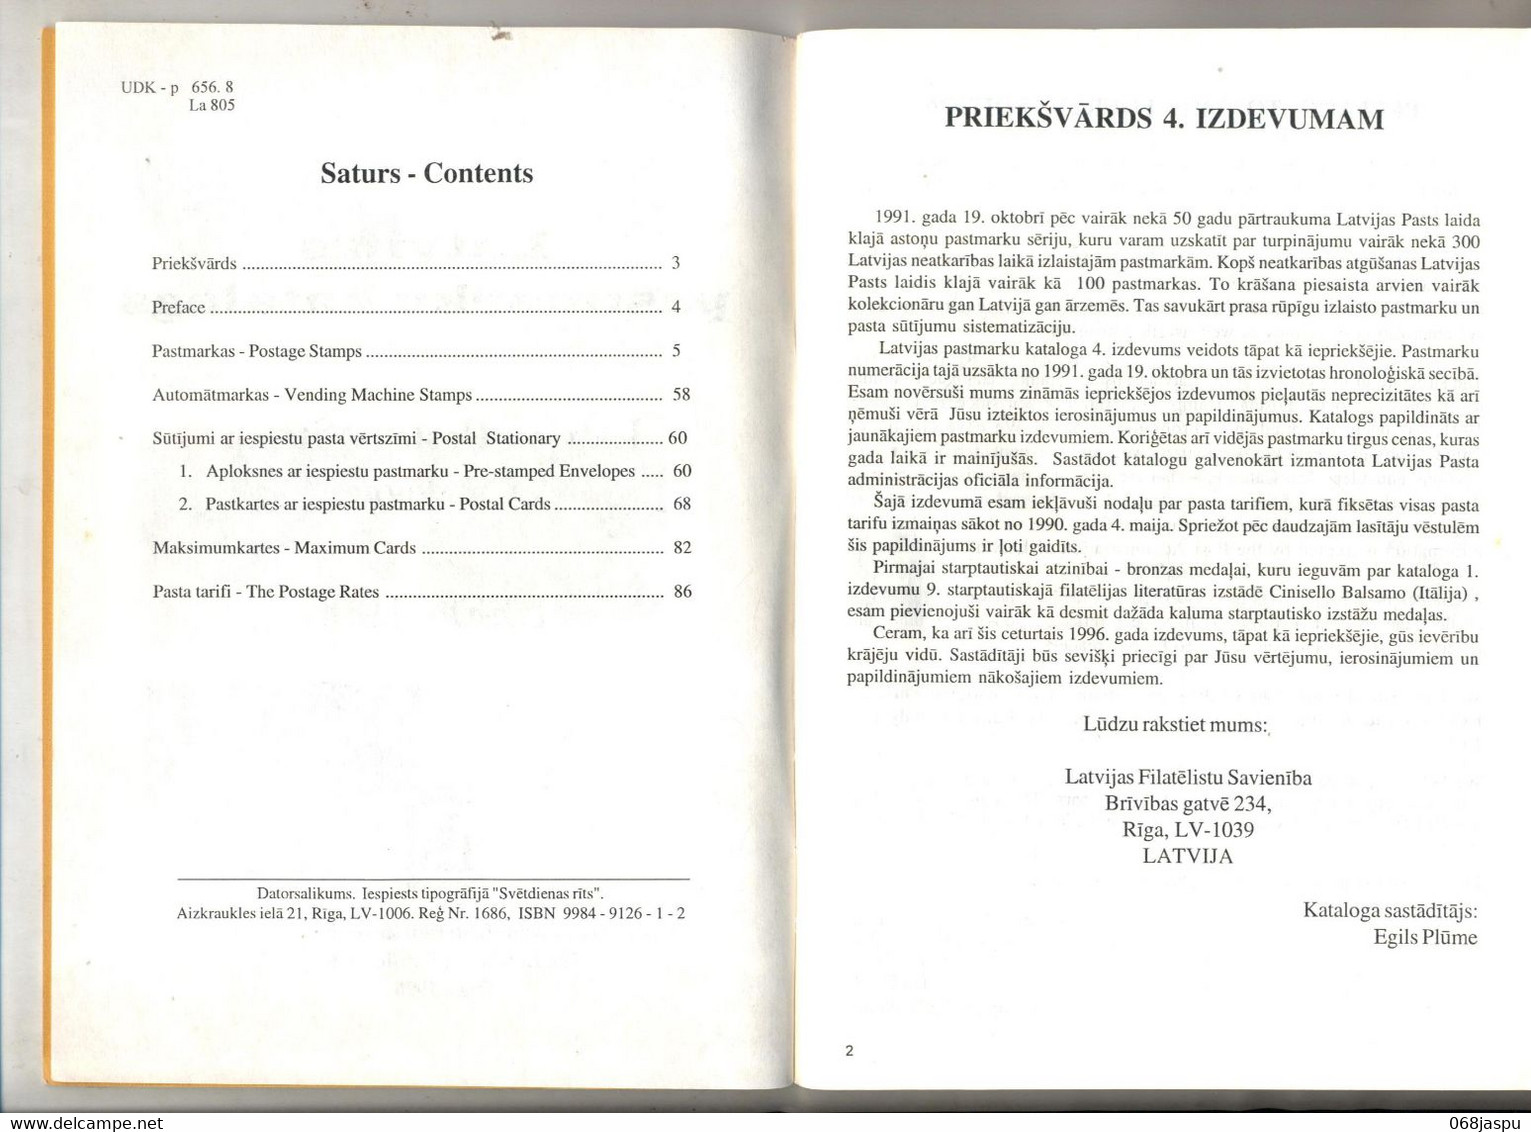 Catalogue Vente Lettonie 1997 - Catalogues For Auction Houses